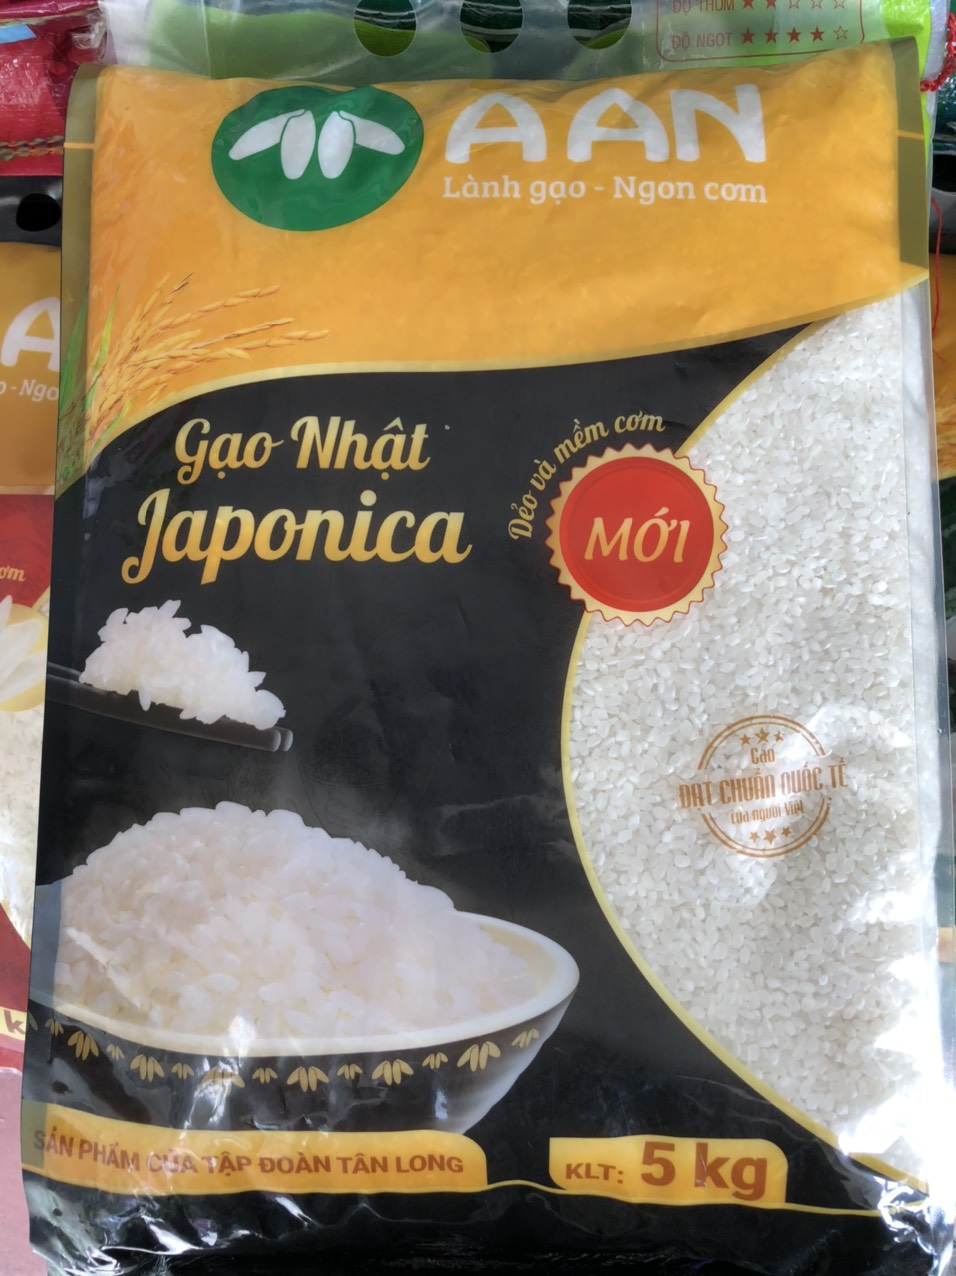 Gạo nhật japonica a an tại thị trường gạo đà nẵng 